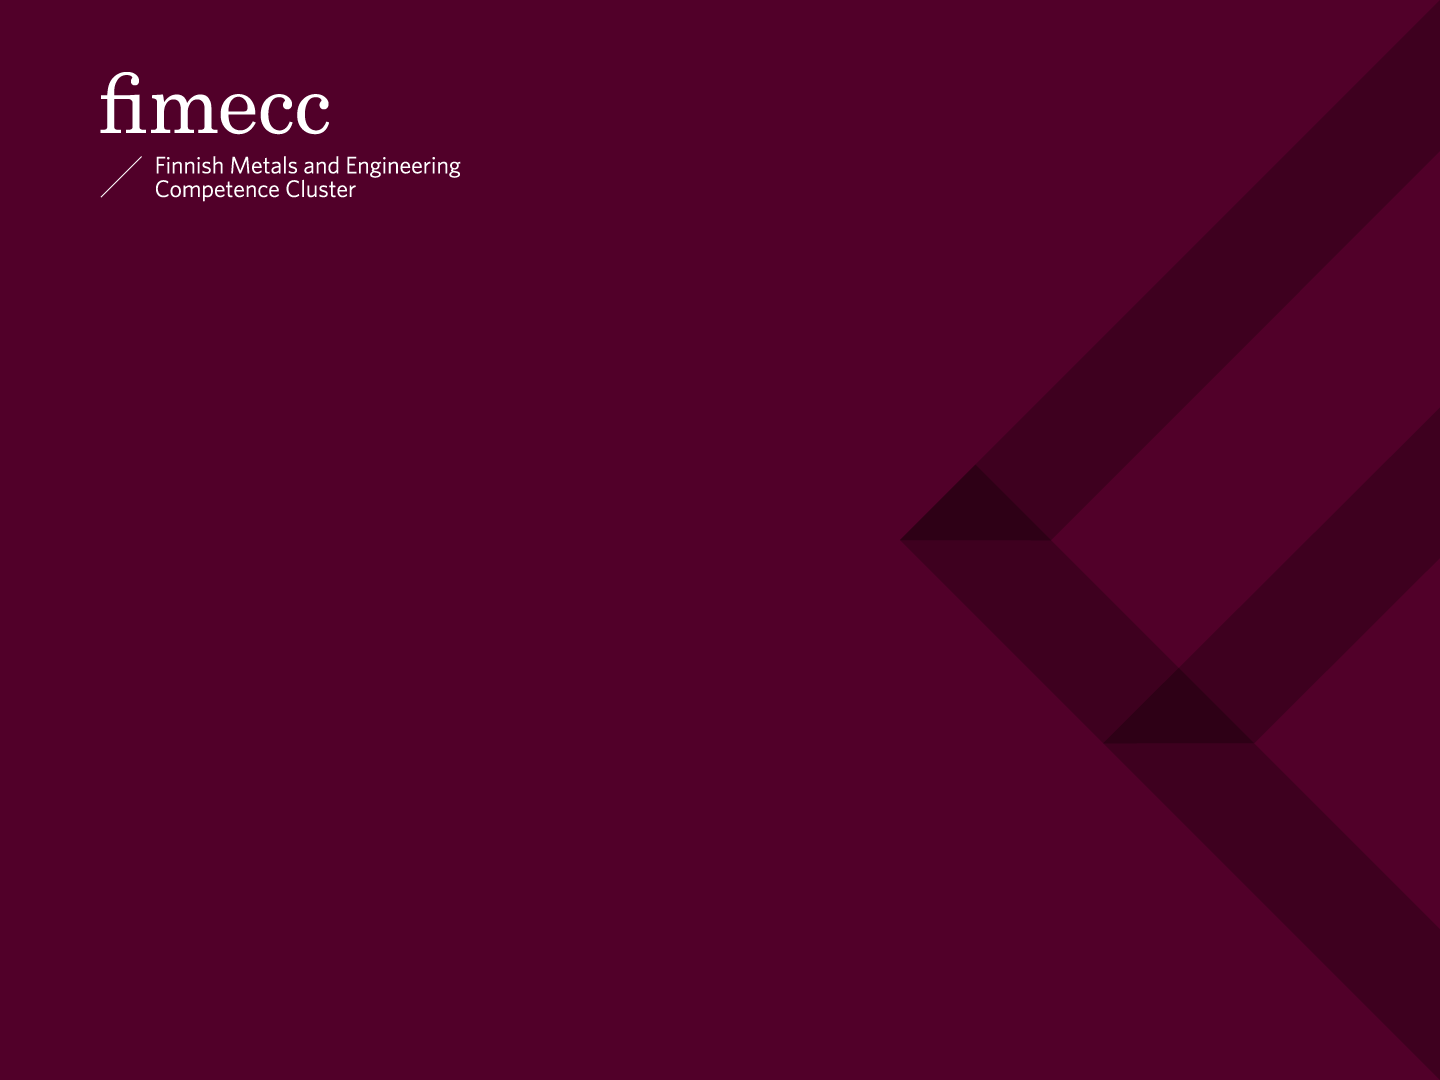 FIMECC co.creation platform FIMECC 3 minuutissa INNOFORUM 10.11.2015 Tampere Yhteystiedot: Jouko Koskinen +358 40 820 2388 jouko.